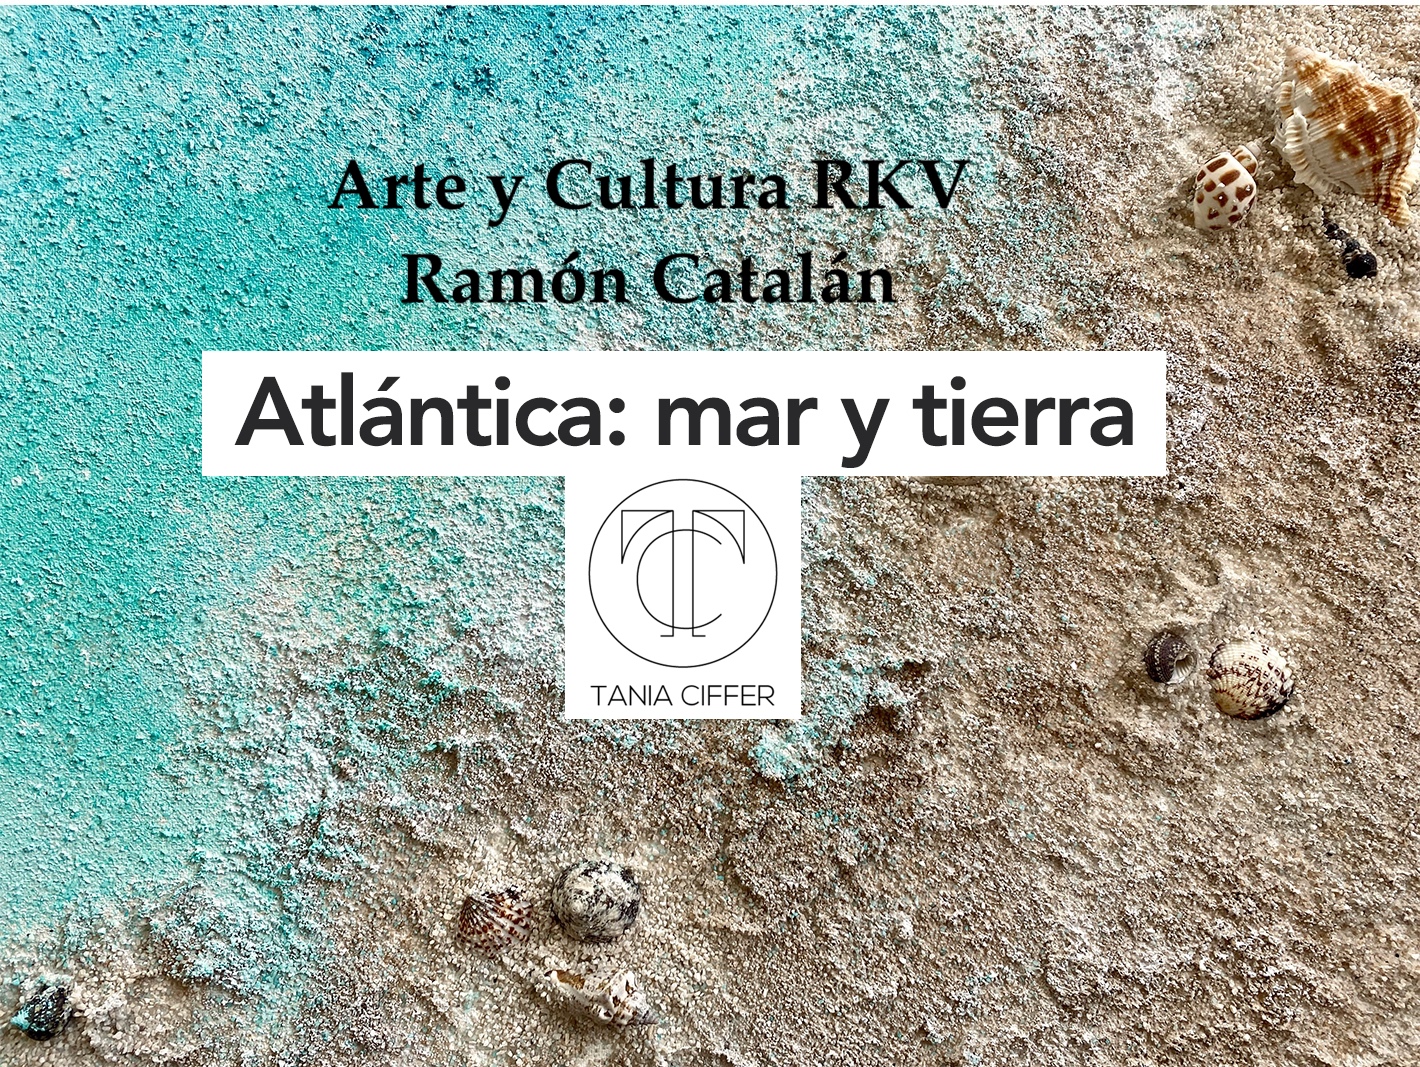 Arte y Cultura RKV Ramón Catalán